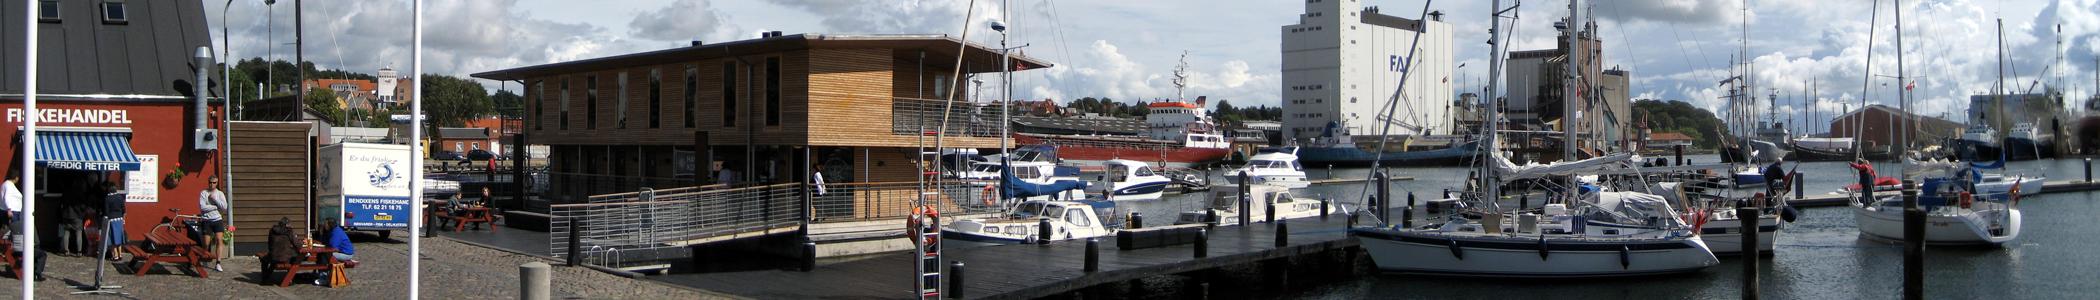 Banner image for Svendborg on GigsGuide